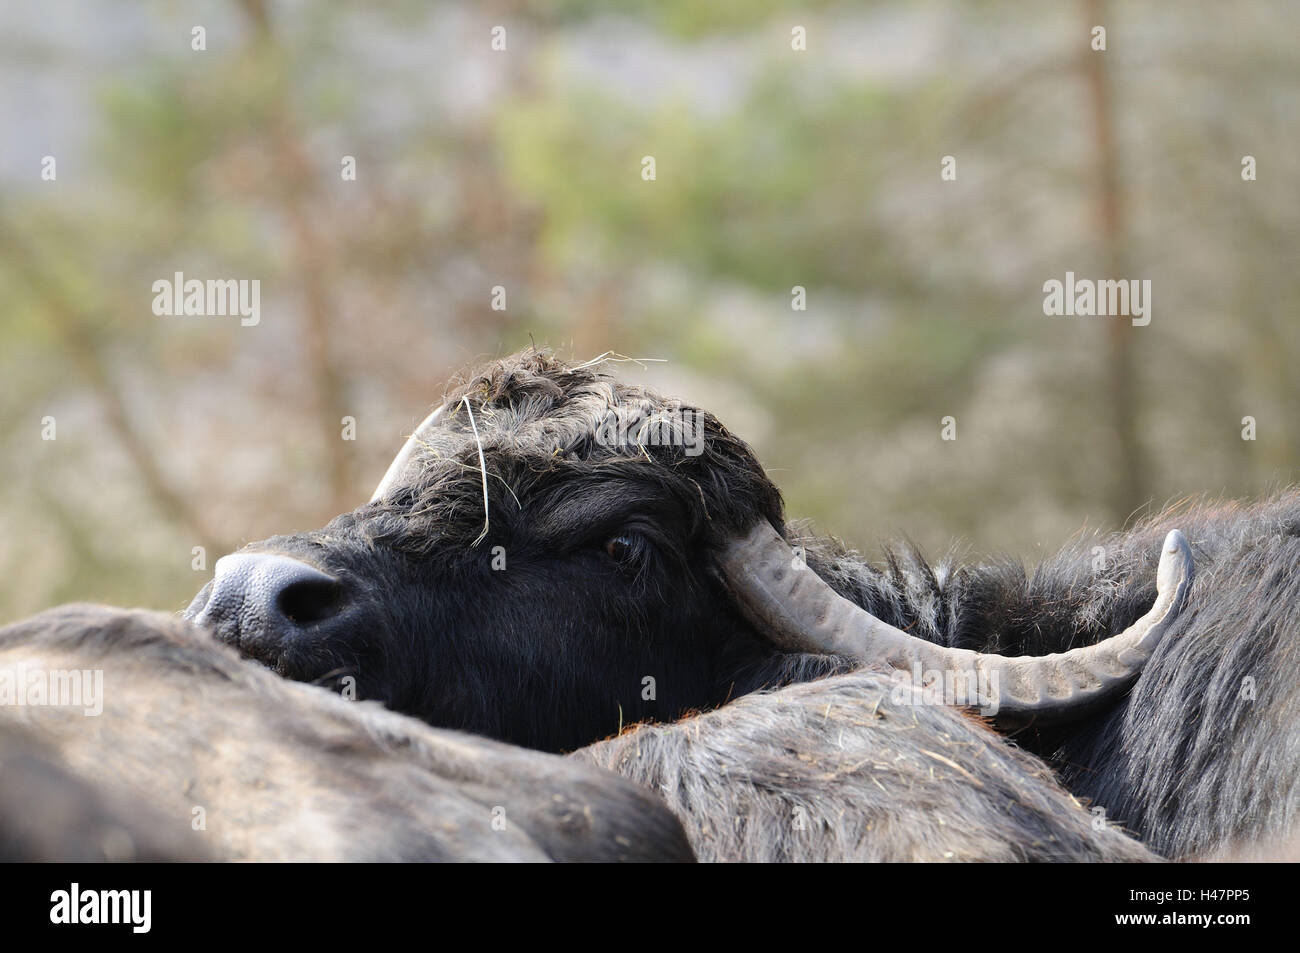 Wild water buffalo, Bubalus arnee, portrait, side view, Stock Photo